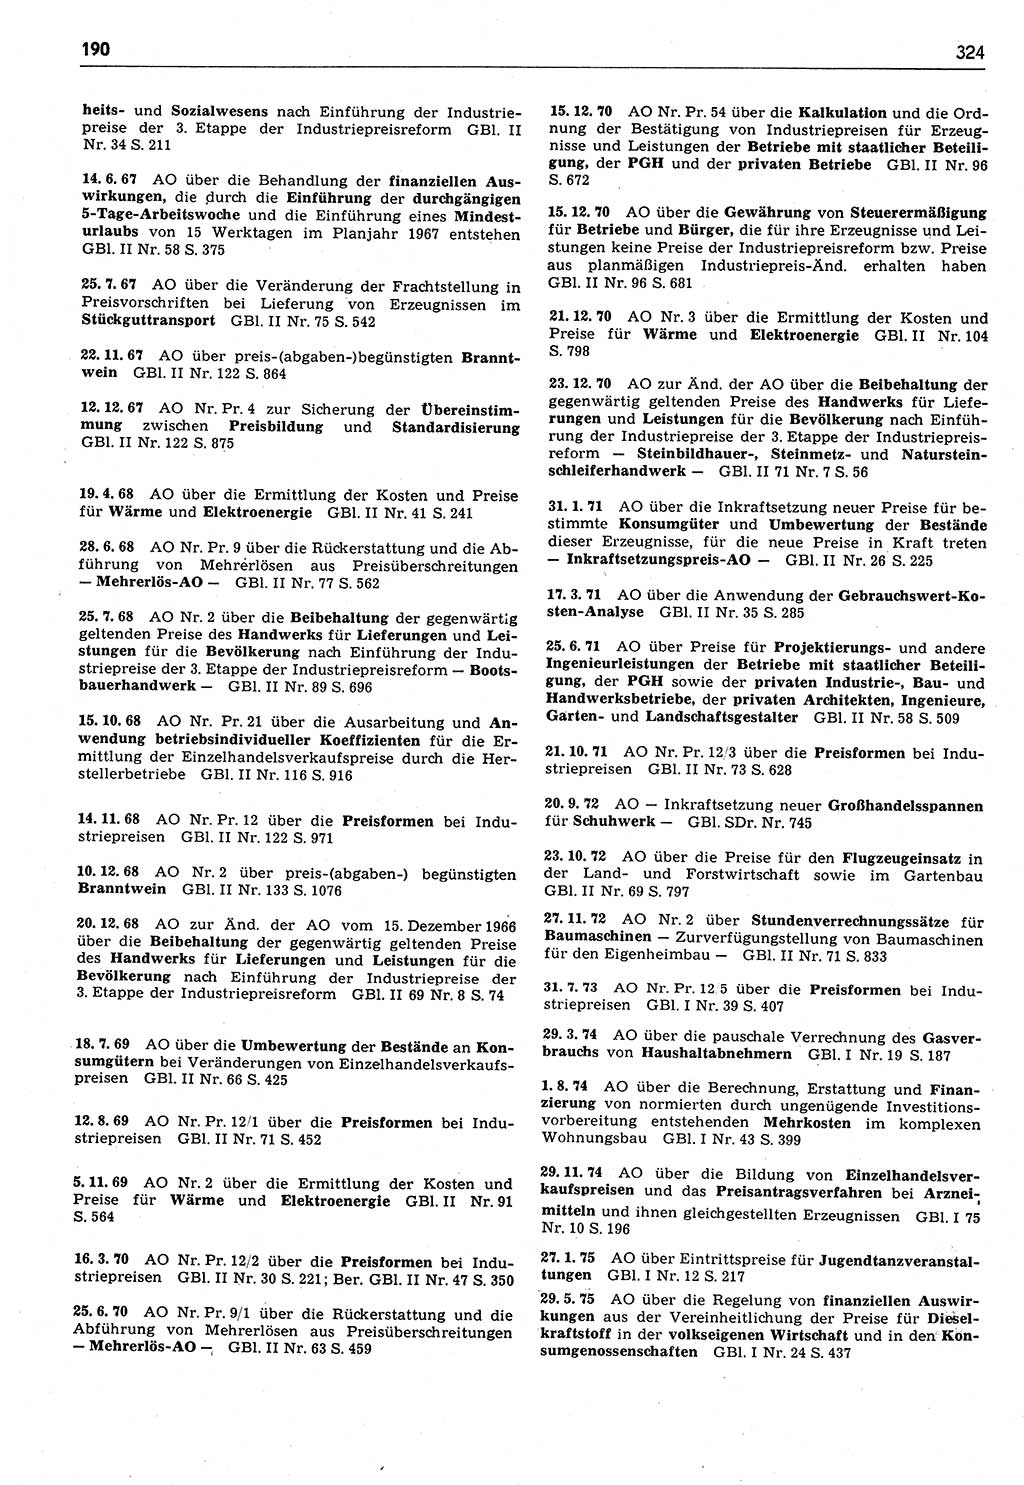 Das geltende Recht der Deutschen Demokratischen Republik (DDR) 1949-1988, Seite 324 (Gelt. R. DDR 1949-1988, S. 324)